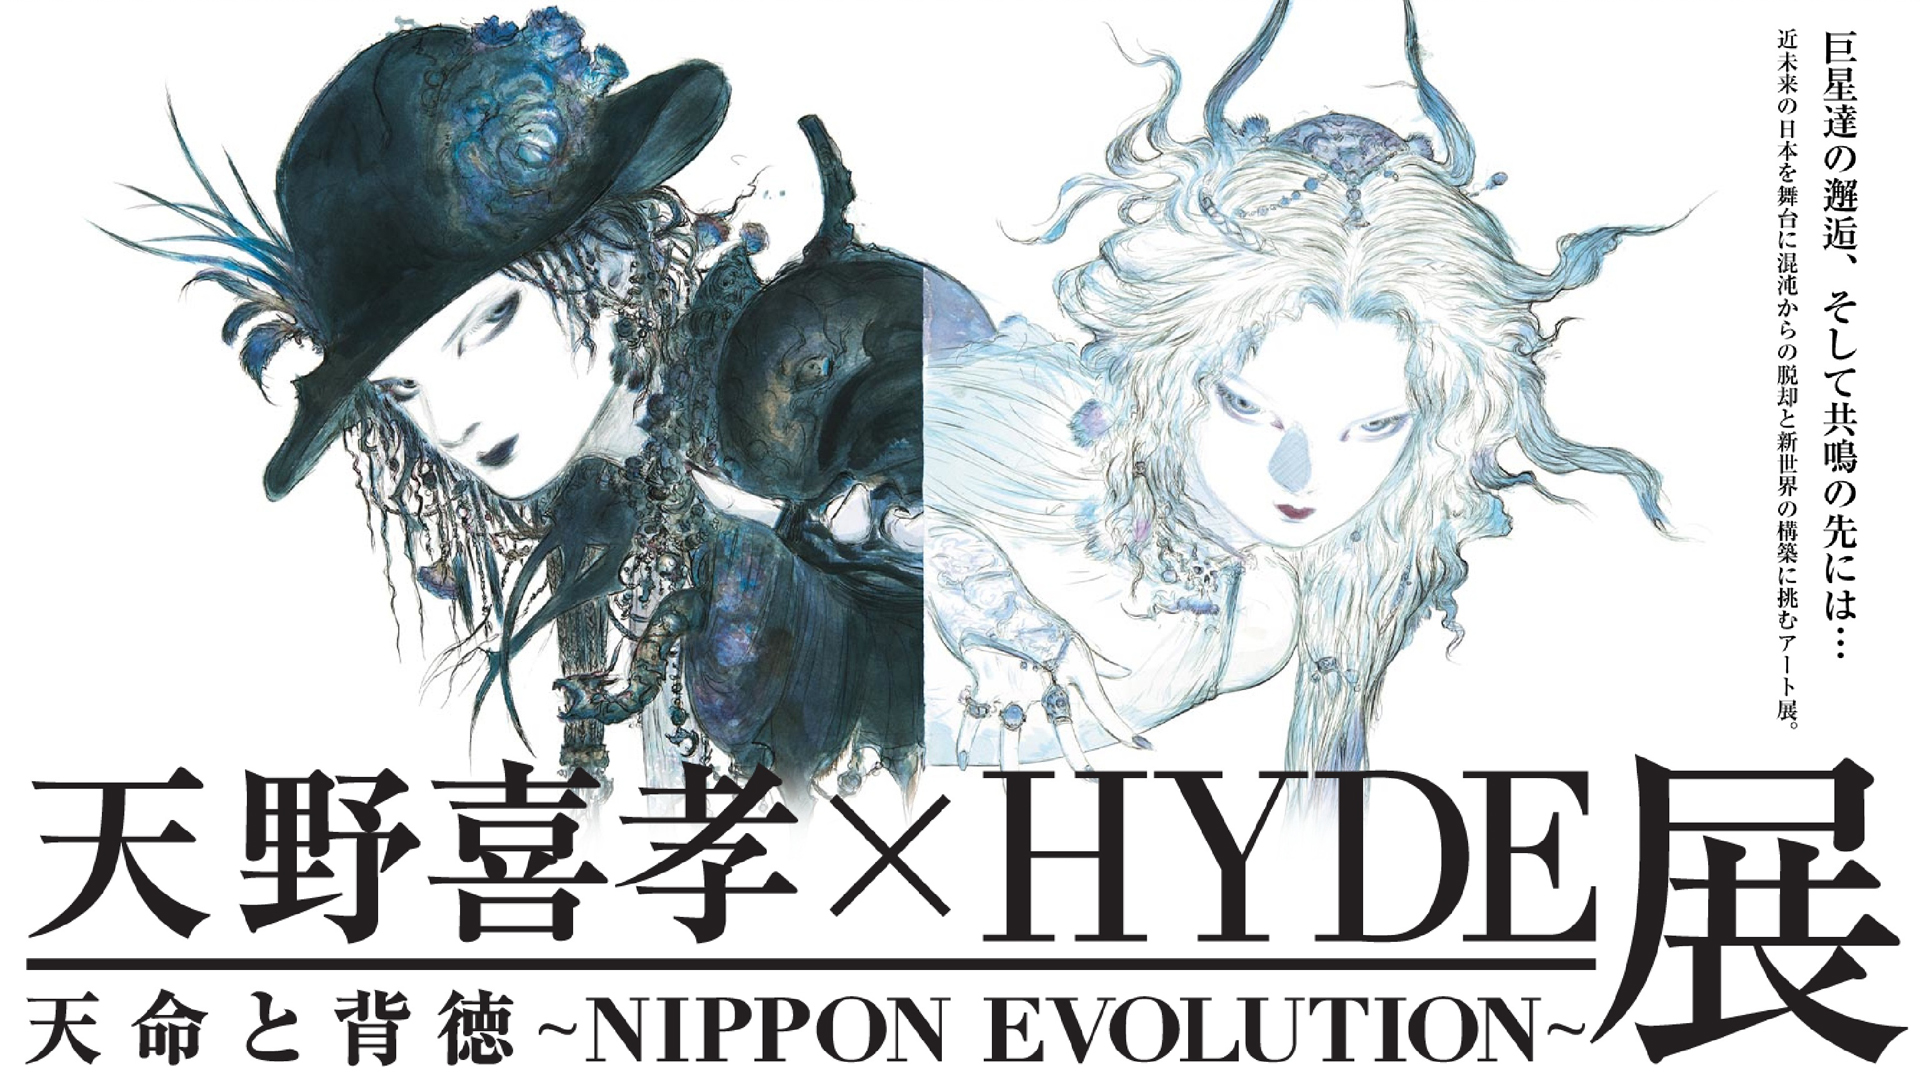 天野喜孝xhyde展 天命と背徳 Nippon Evolution 楽曲 動画連動ソフトウェアを提供 Max Msp Mirrorboy